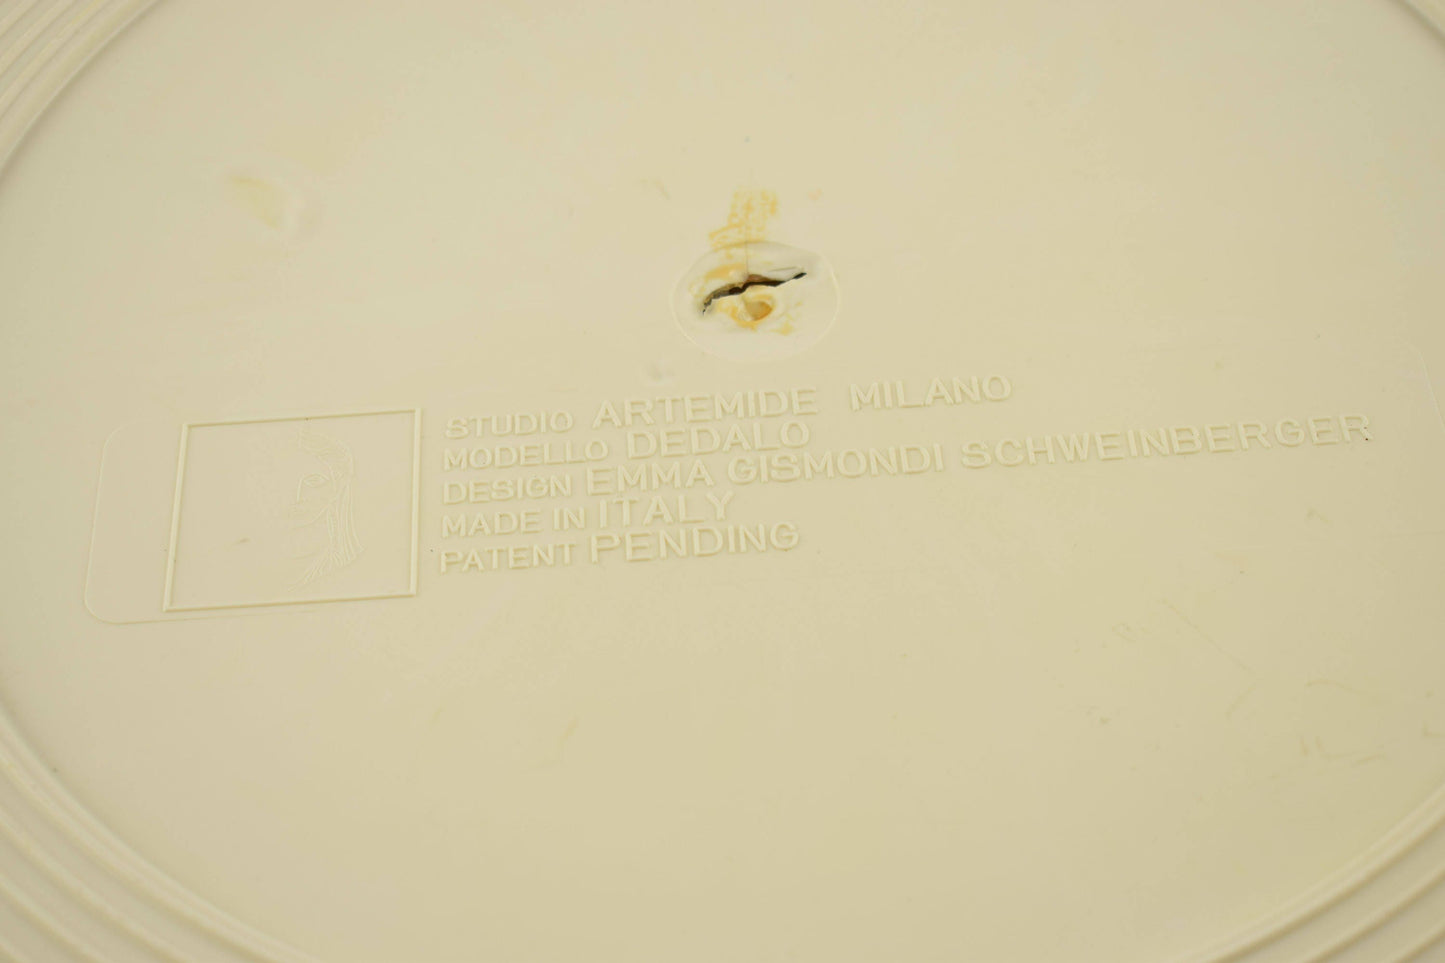 Dedalo, door Artemide Milano, Italië. Paraplu- en stokstandaard. Collectors item te zien in het Museum of Modern Art in New York